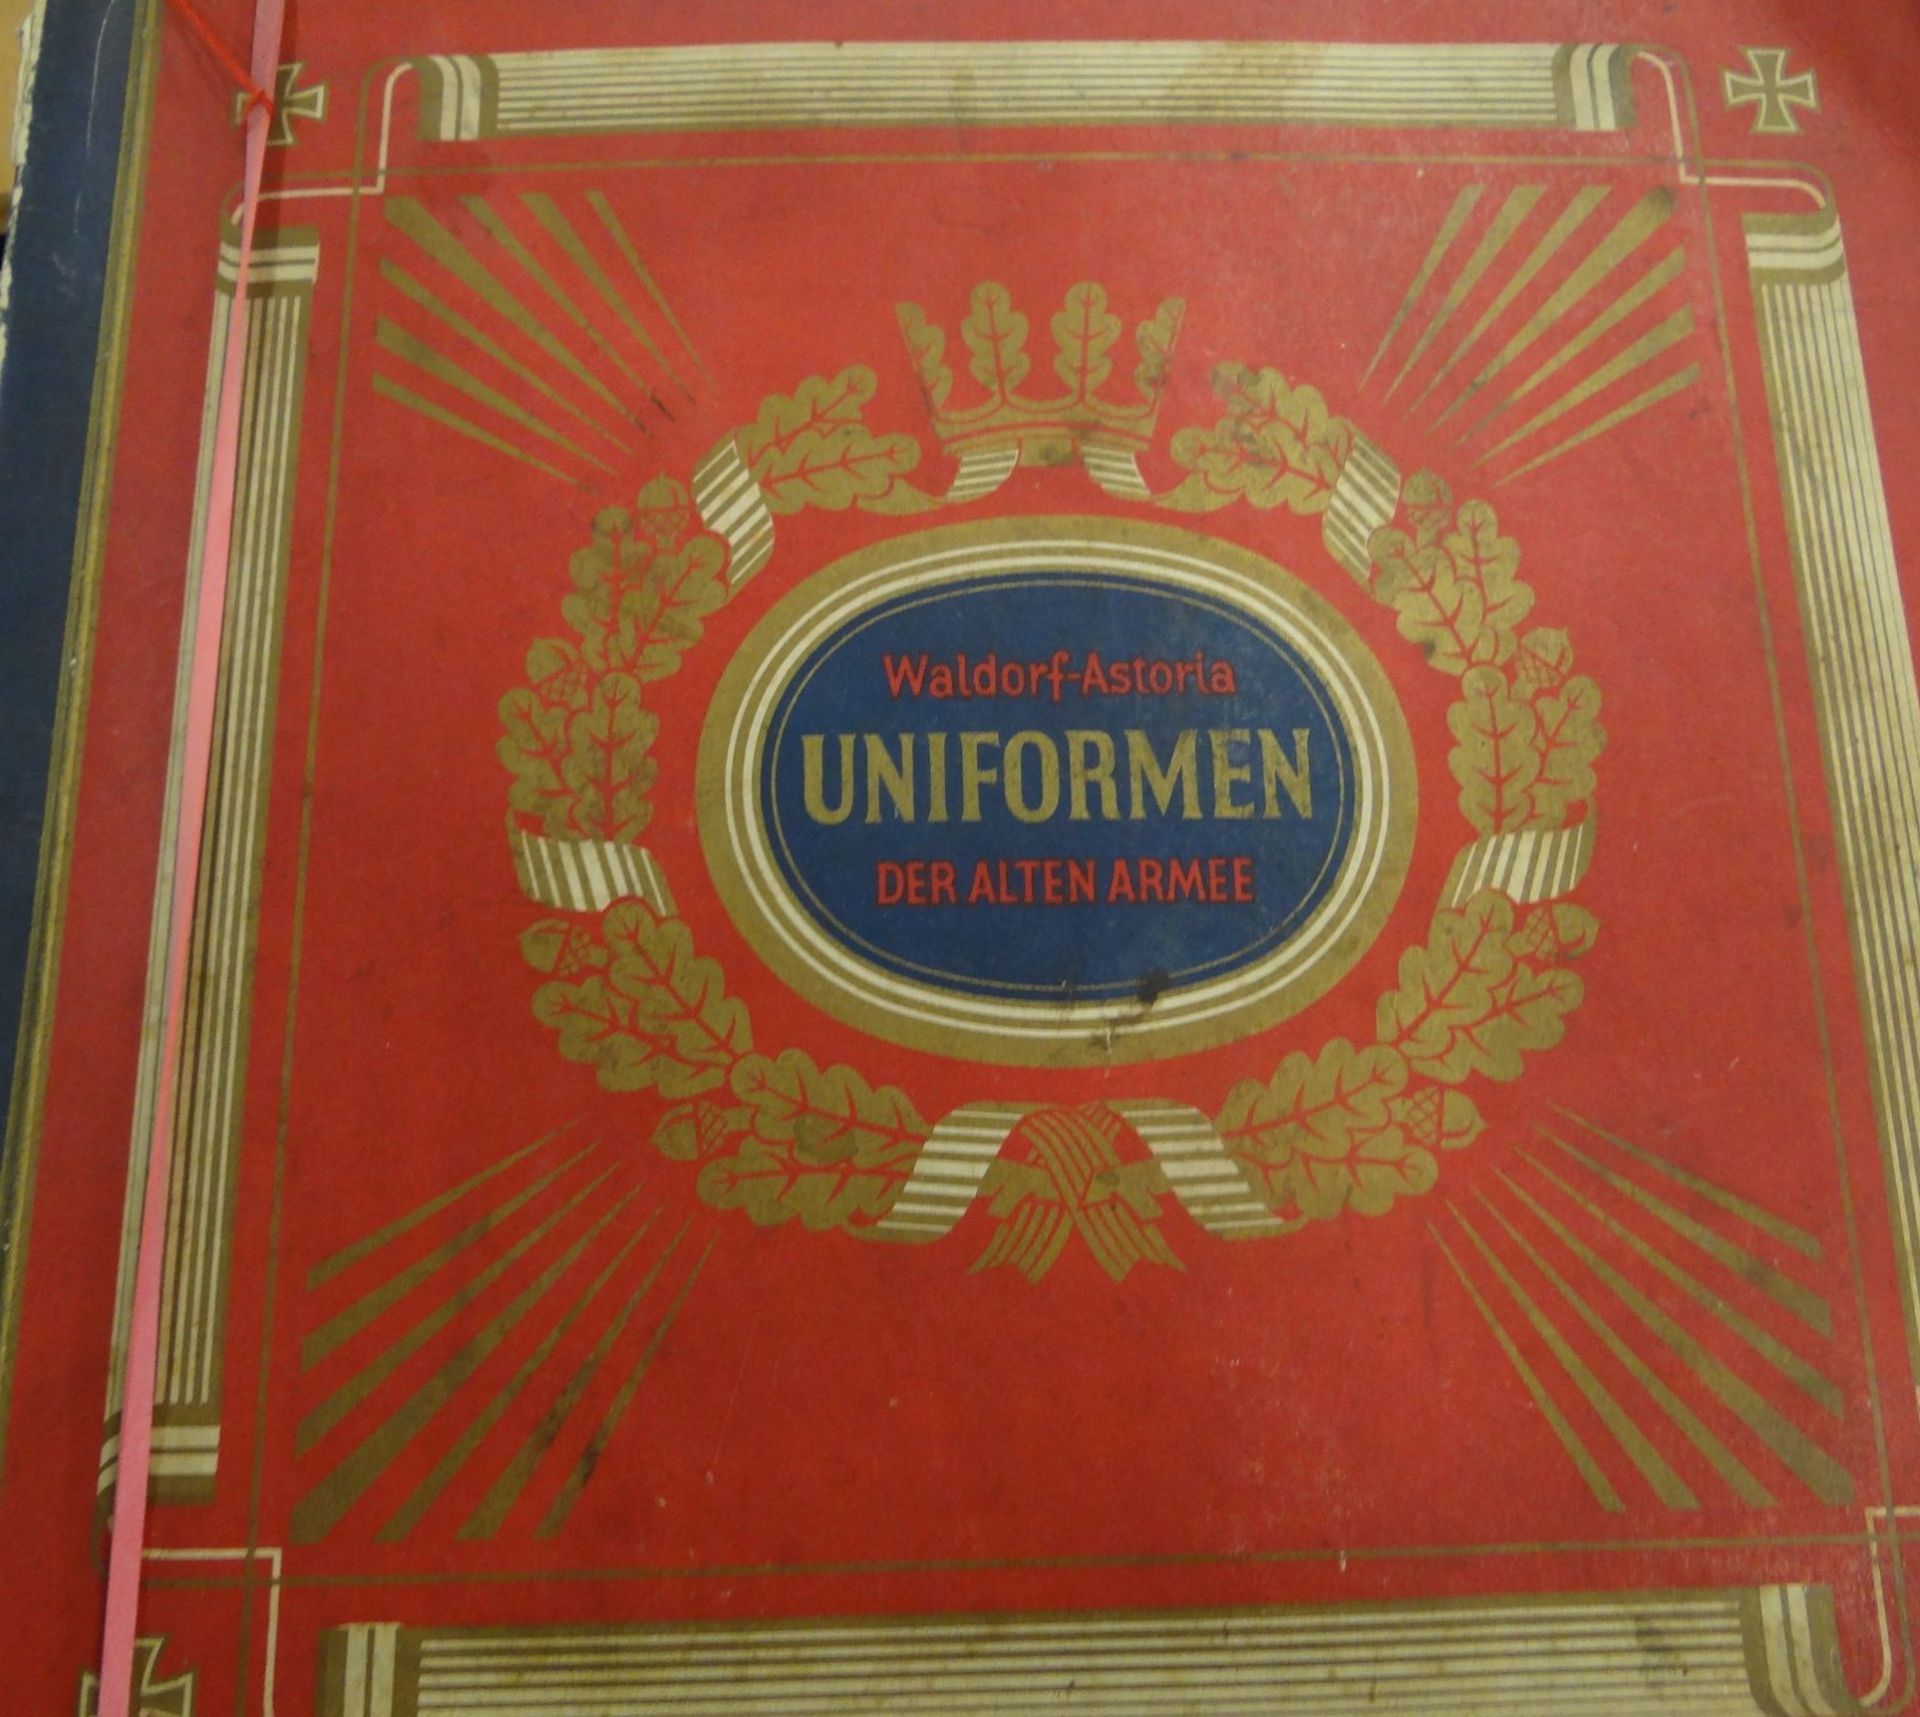 Sammelalbum "Uniformen der alten Armee", komplett